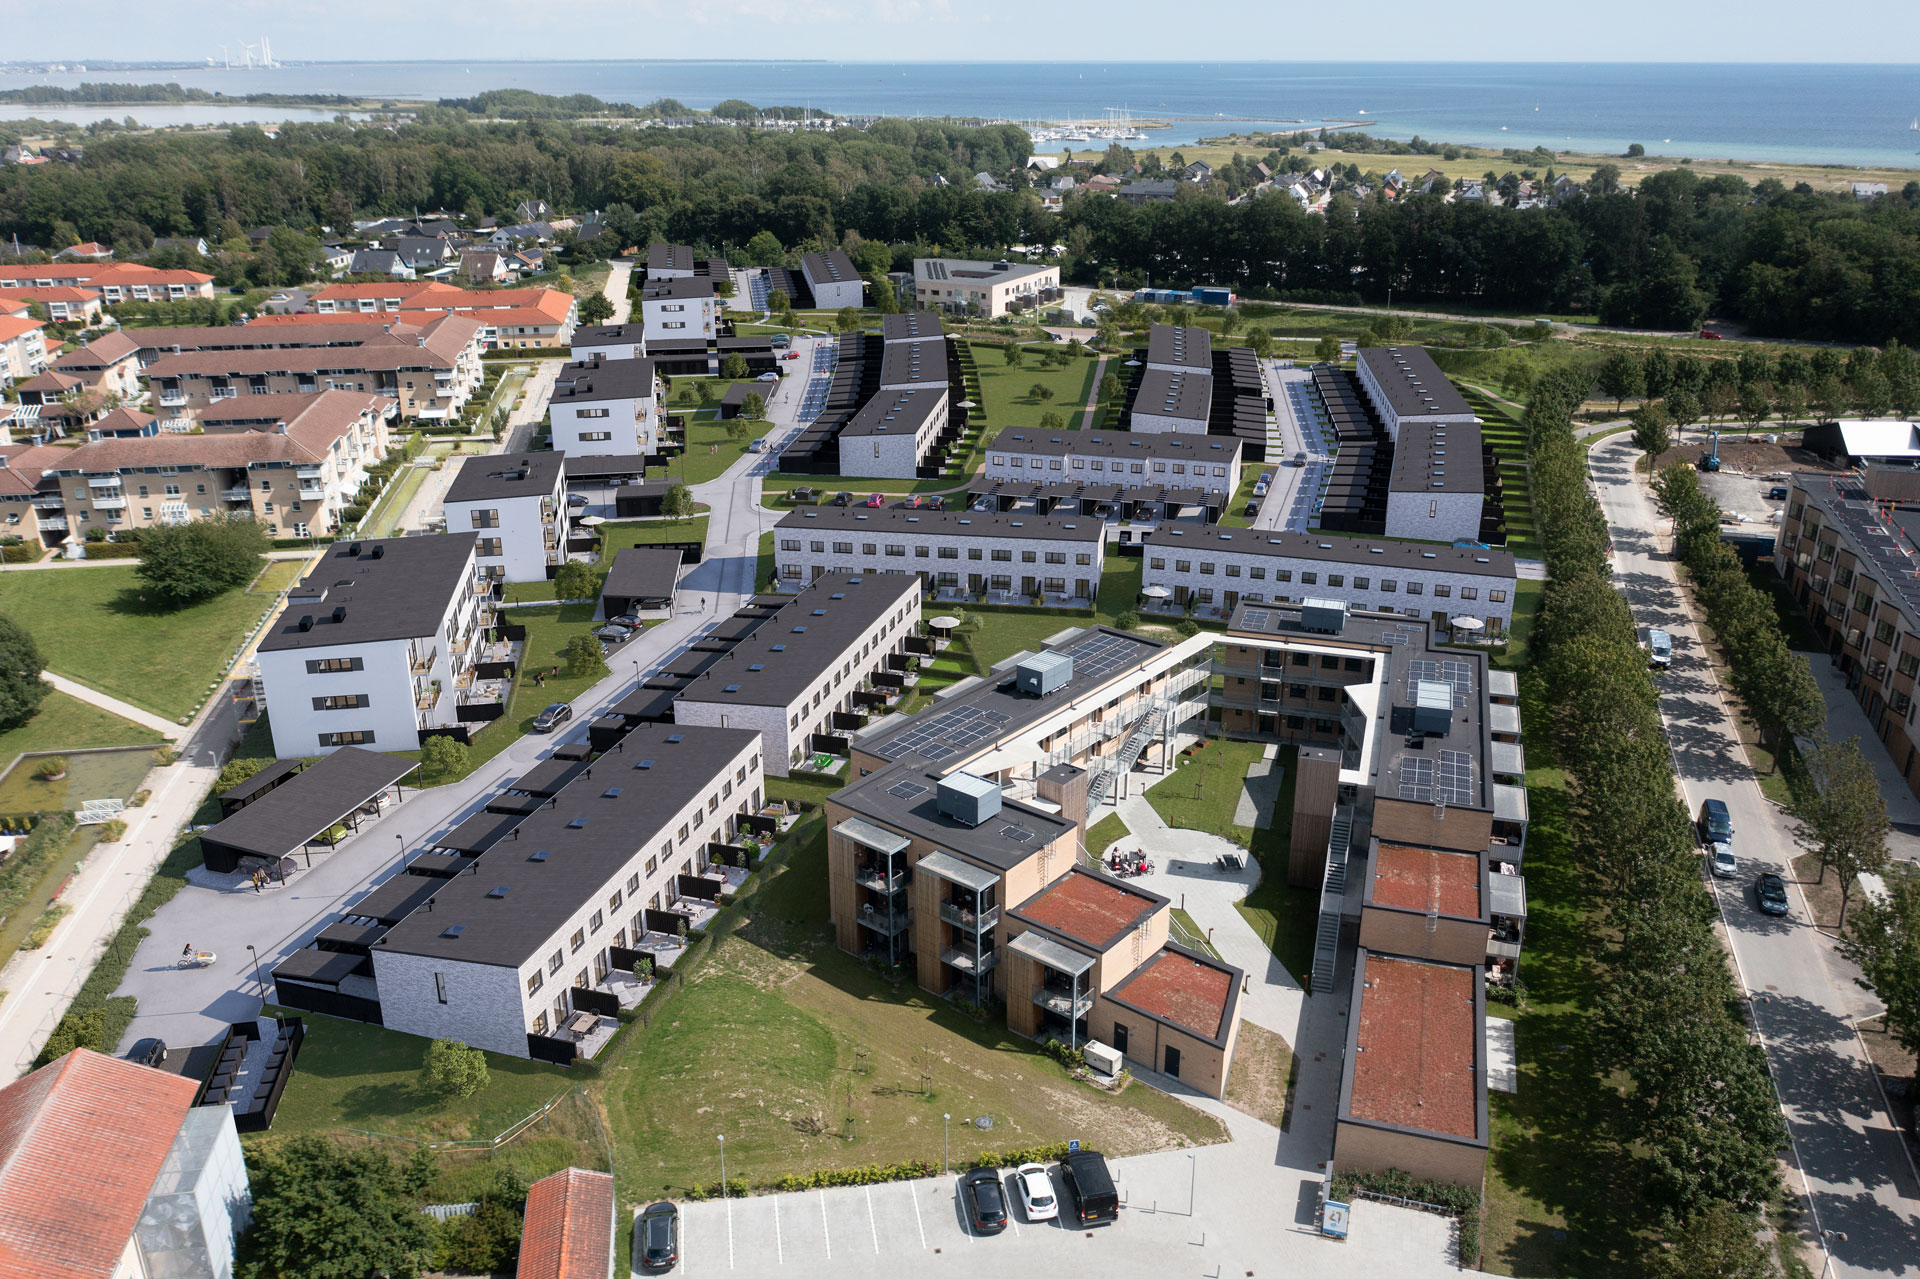 Ejerlejlighed, lejlighed, rækkehus, Lind & Risør, nybyggeri, projektsalg, Greve, Strandby have